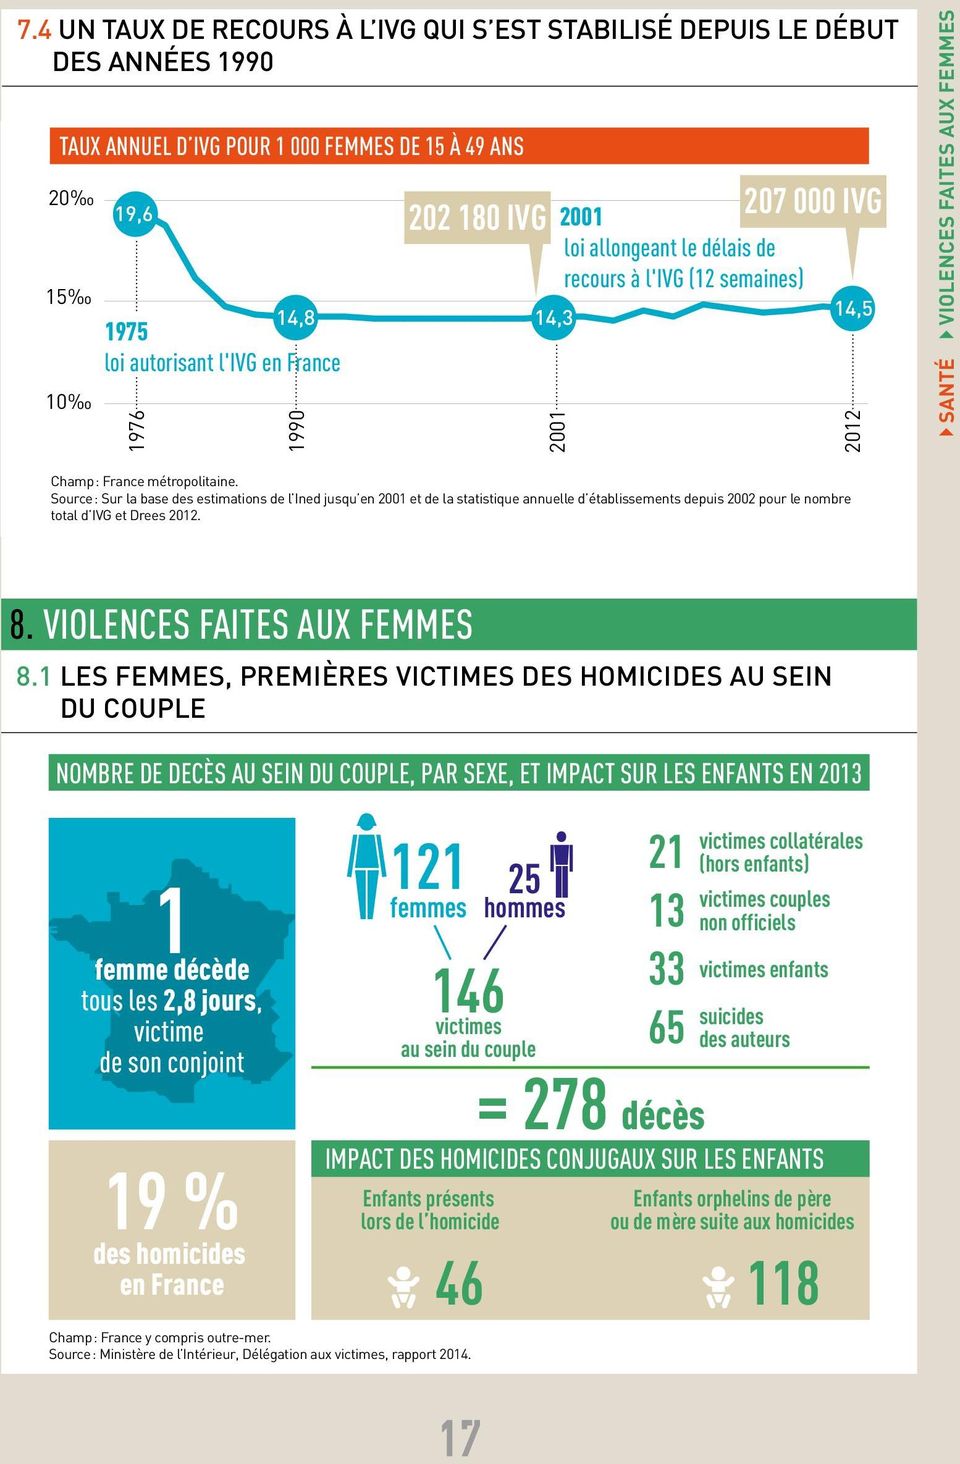 Source : Sur la base des estimations de l Ined jusqu en 2001 et de la statistique annuelle d établissements depuis 2002 pour le nombre total d IVG et Drees 2012. 8. VIOLENCES FAITES AUX FEMMES 8.